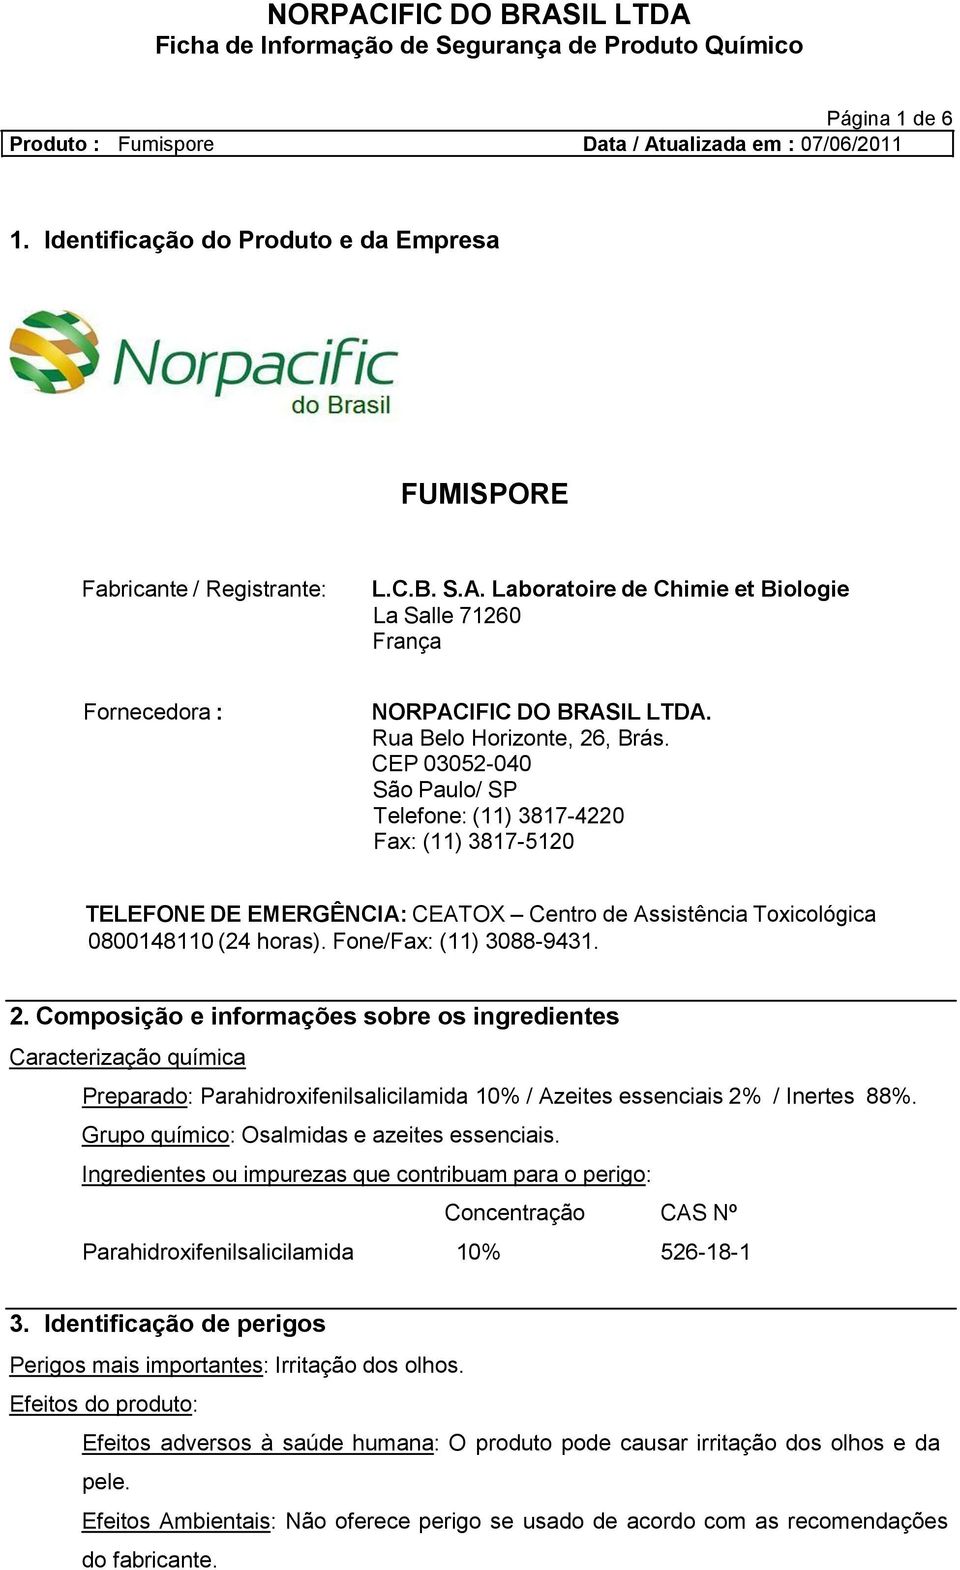 Fone/Fax: (11) 3088-9431. 2. Composição e informações sobre os ingredientes Caracterização química Preparado: Parahidroxifenilsalicilamida 10% / Azeites essenciais 2% / Inertes 88%.